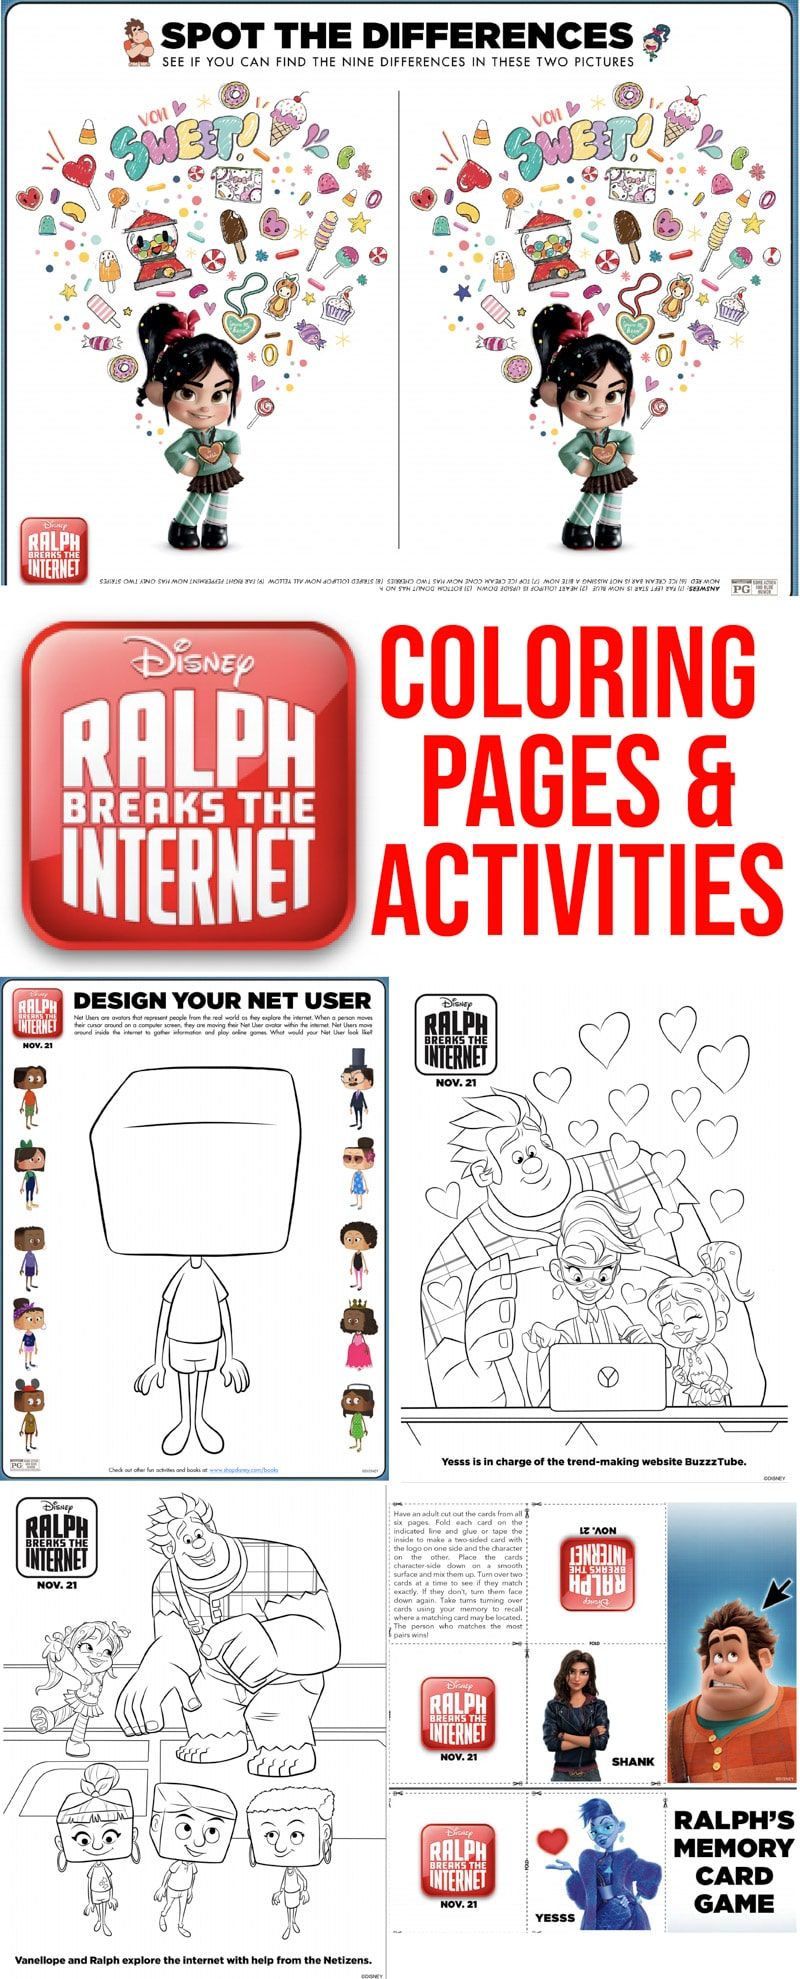 Tasuta prinditav Ralph murrab Internetti värvimislehti ja tegevuslehti! Ideaalne kõigile, kes otsivad Wreck it Ralph värvimislehti!